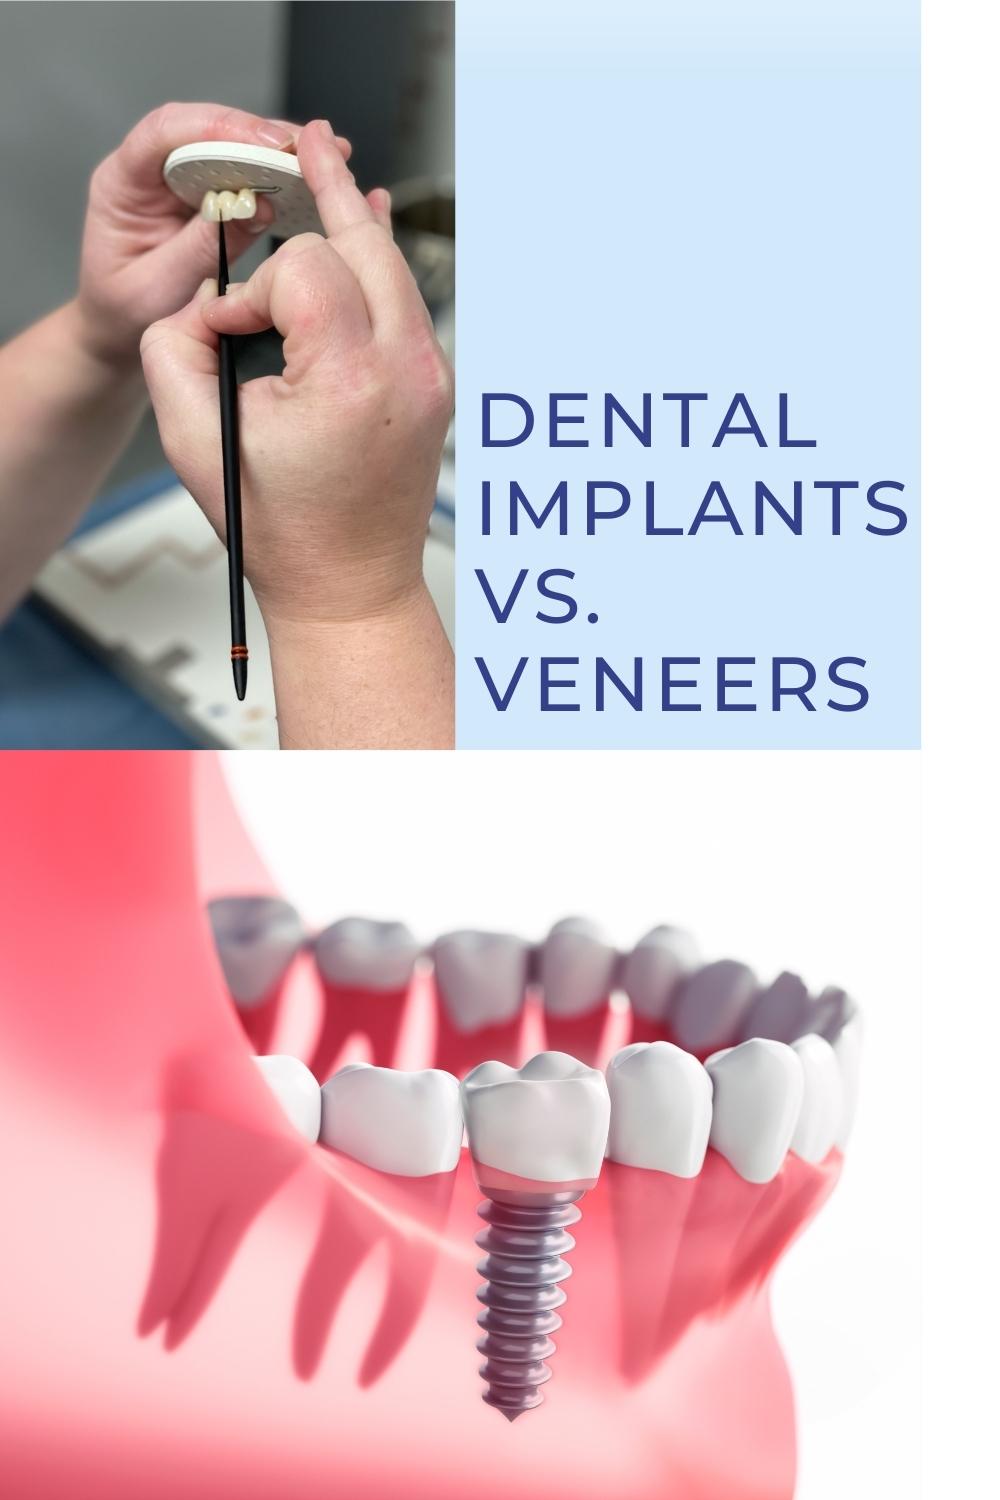 Implants vs. veneers